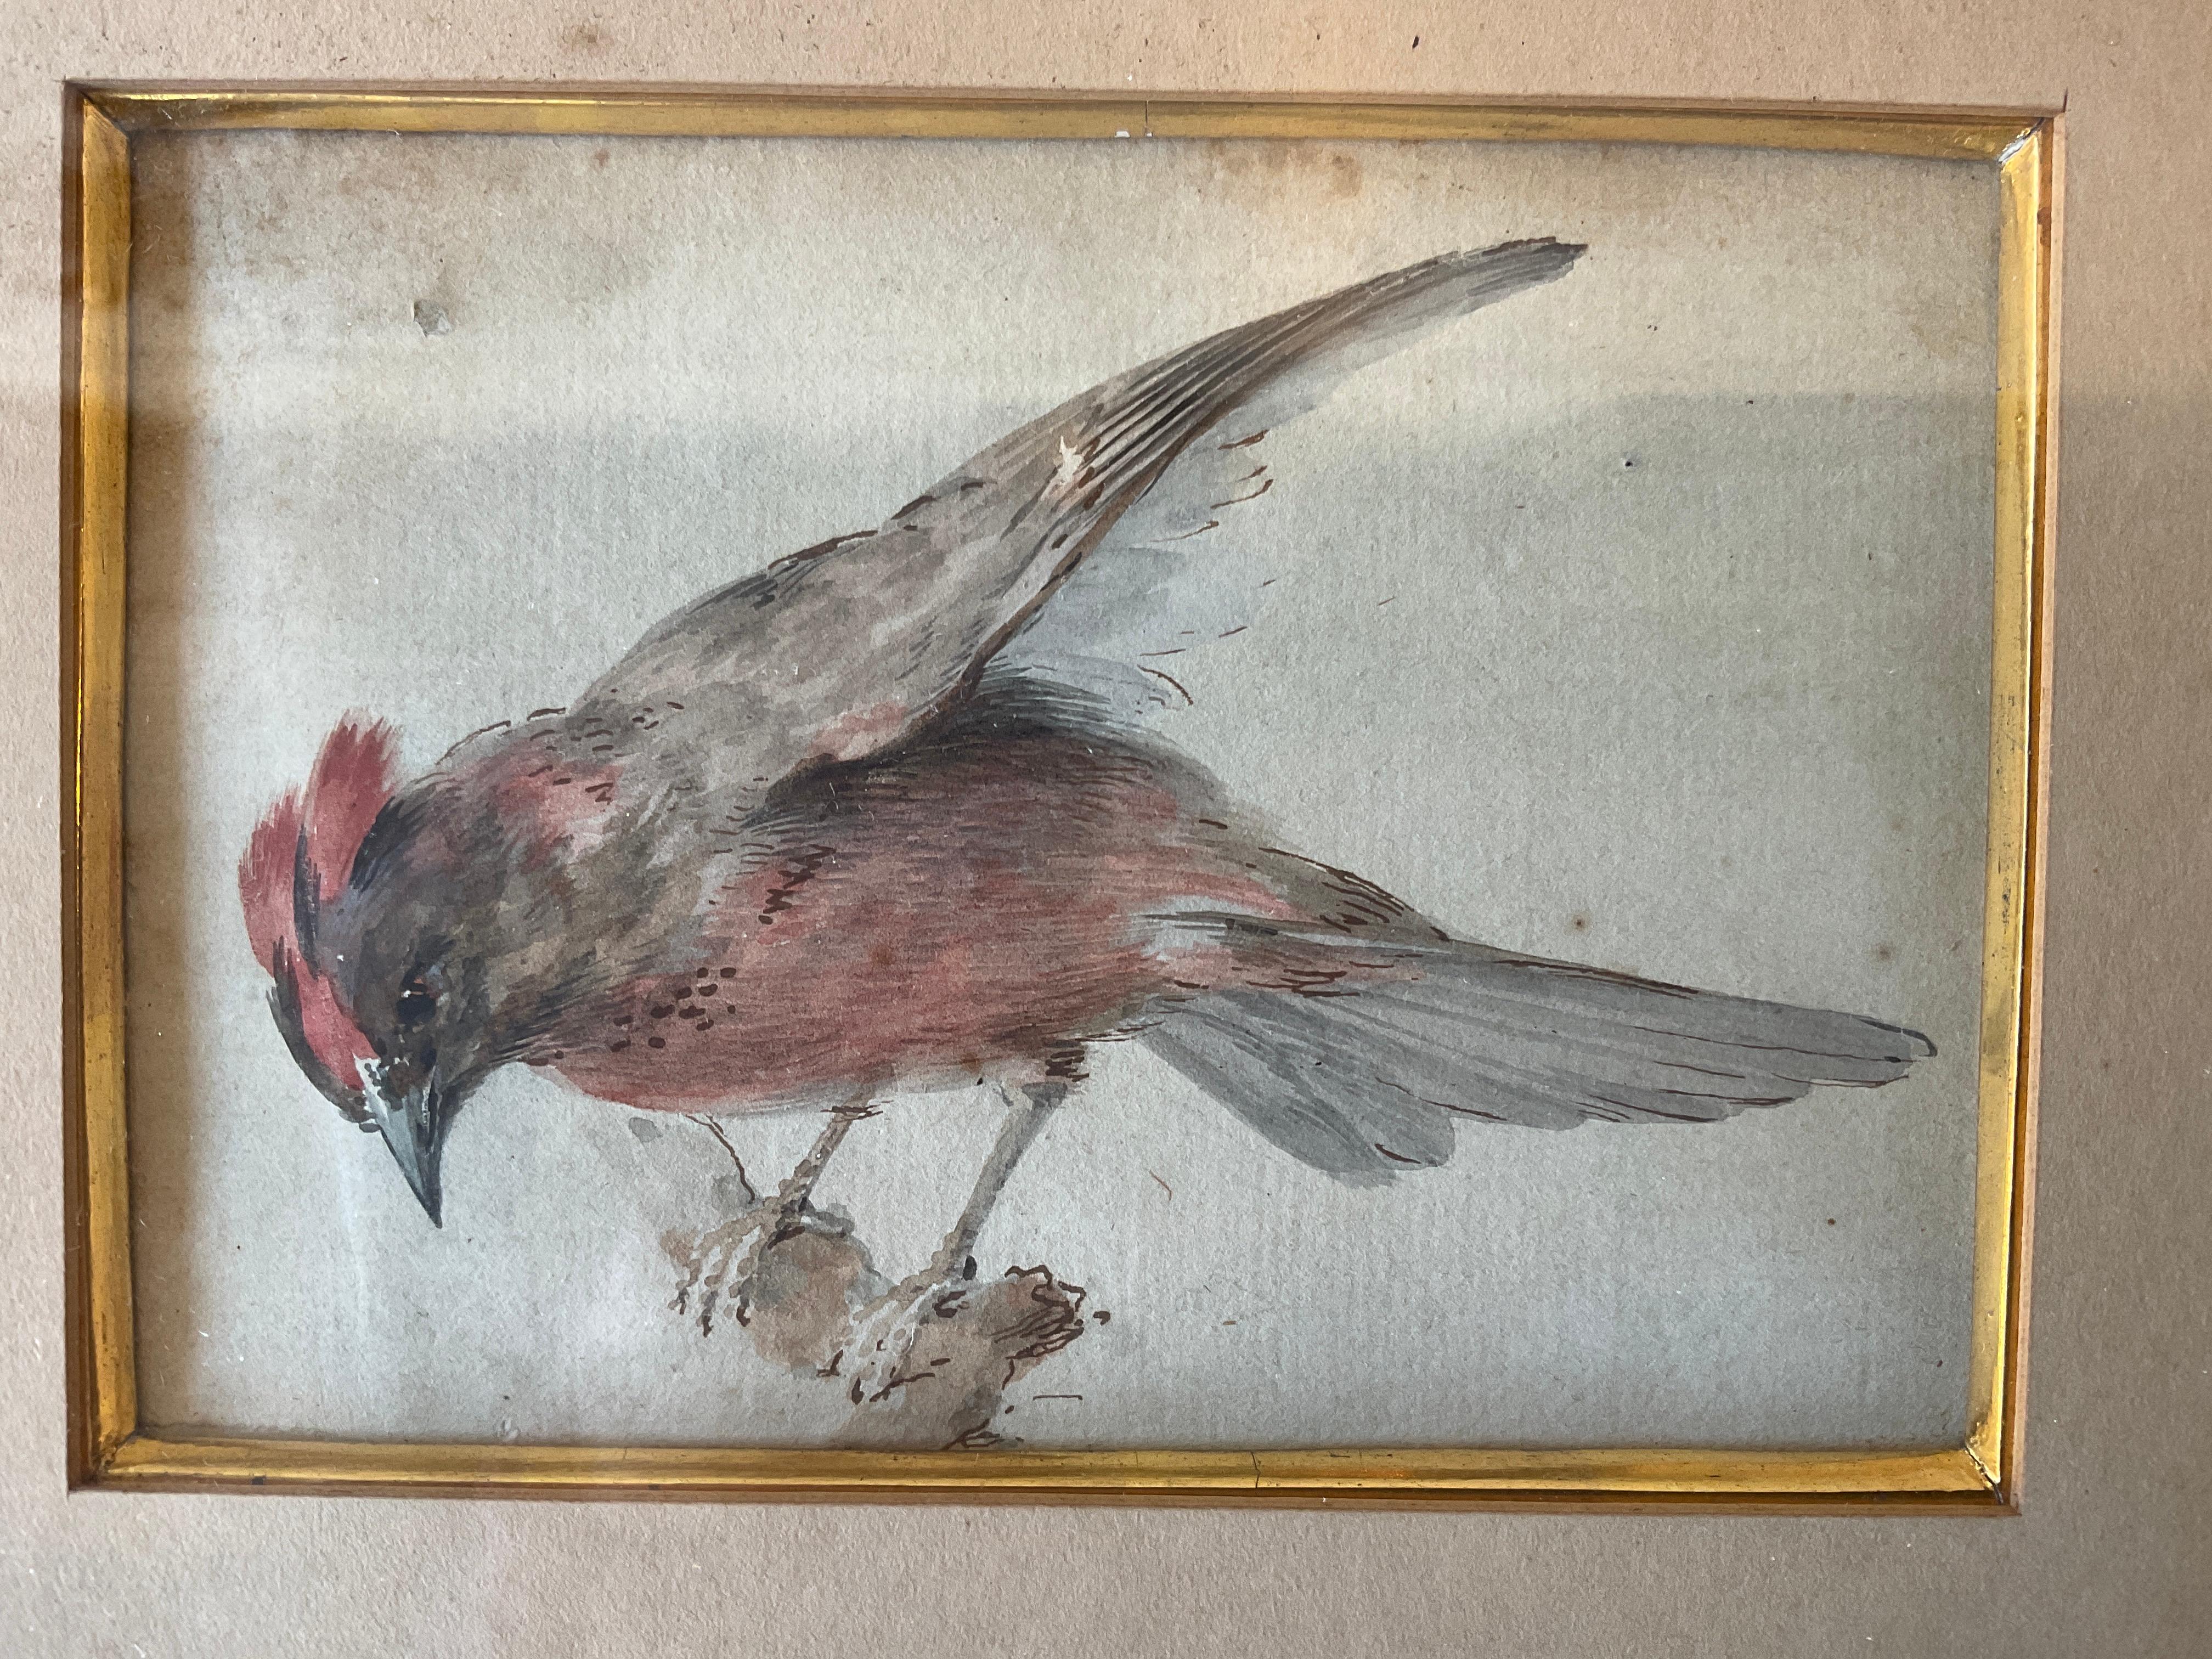 Aquarelle de 1870 représentant un oiseau.